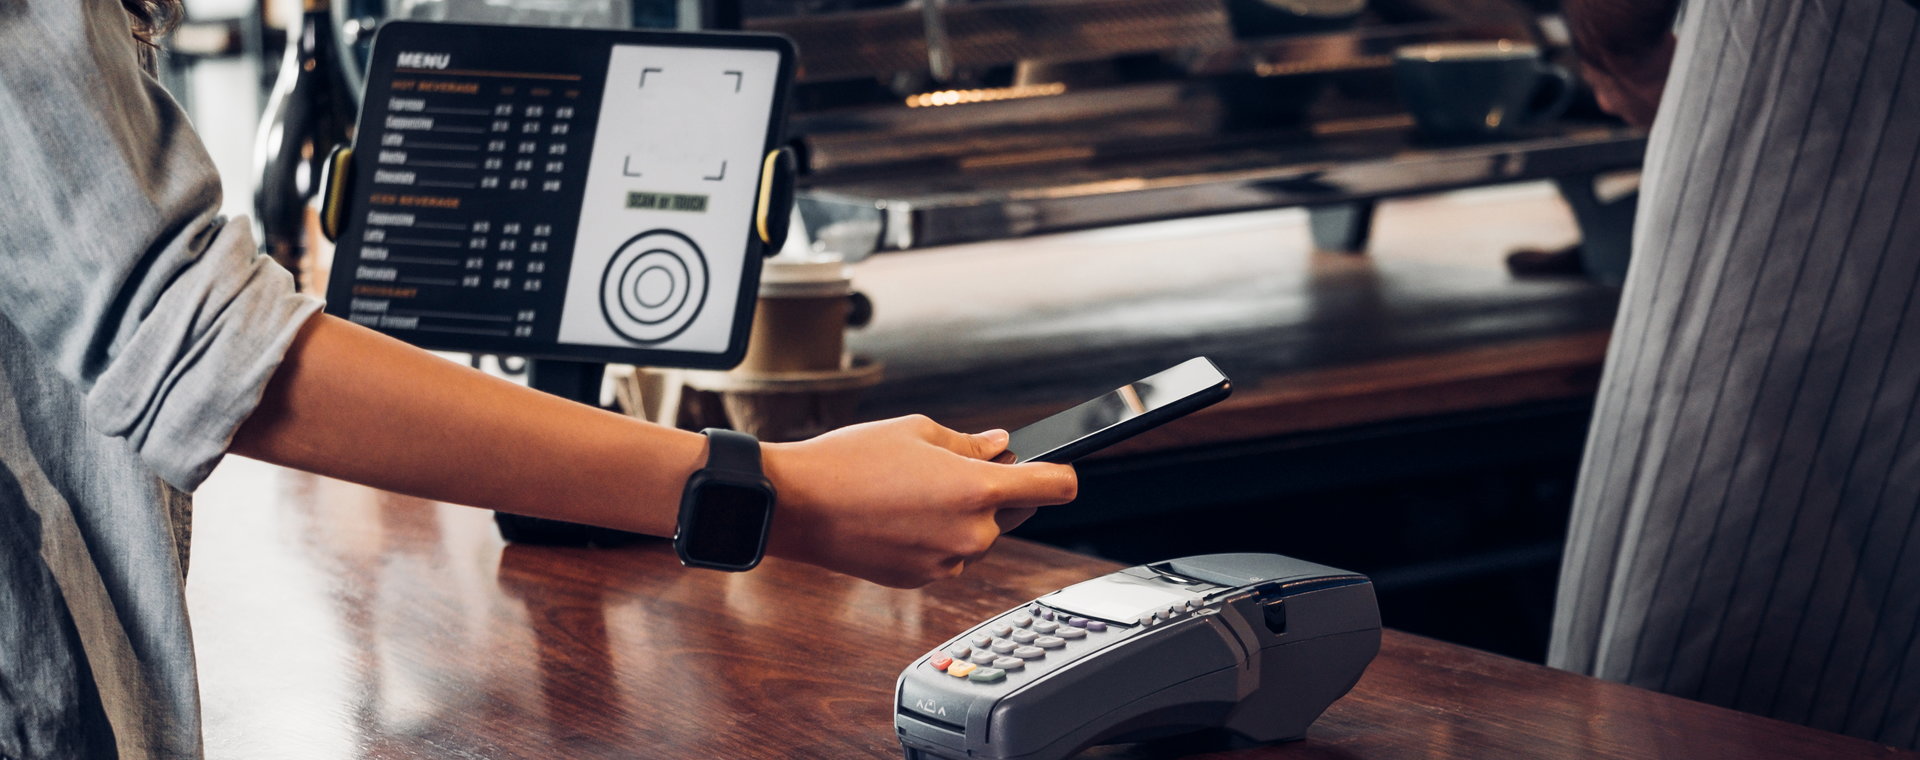 W sklepie czy restauracji zapłacimy zbliżeniowo kartą, kartą w telefonie, a nawet zegarkiem. Wkrótce możliwe będą płatności bezdotykowe za pośrednictwem BLIK-a.